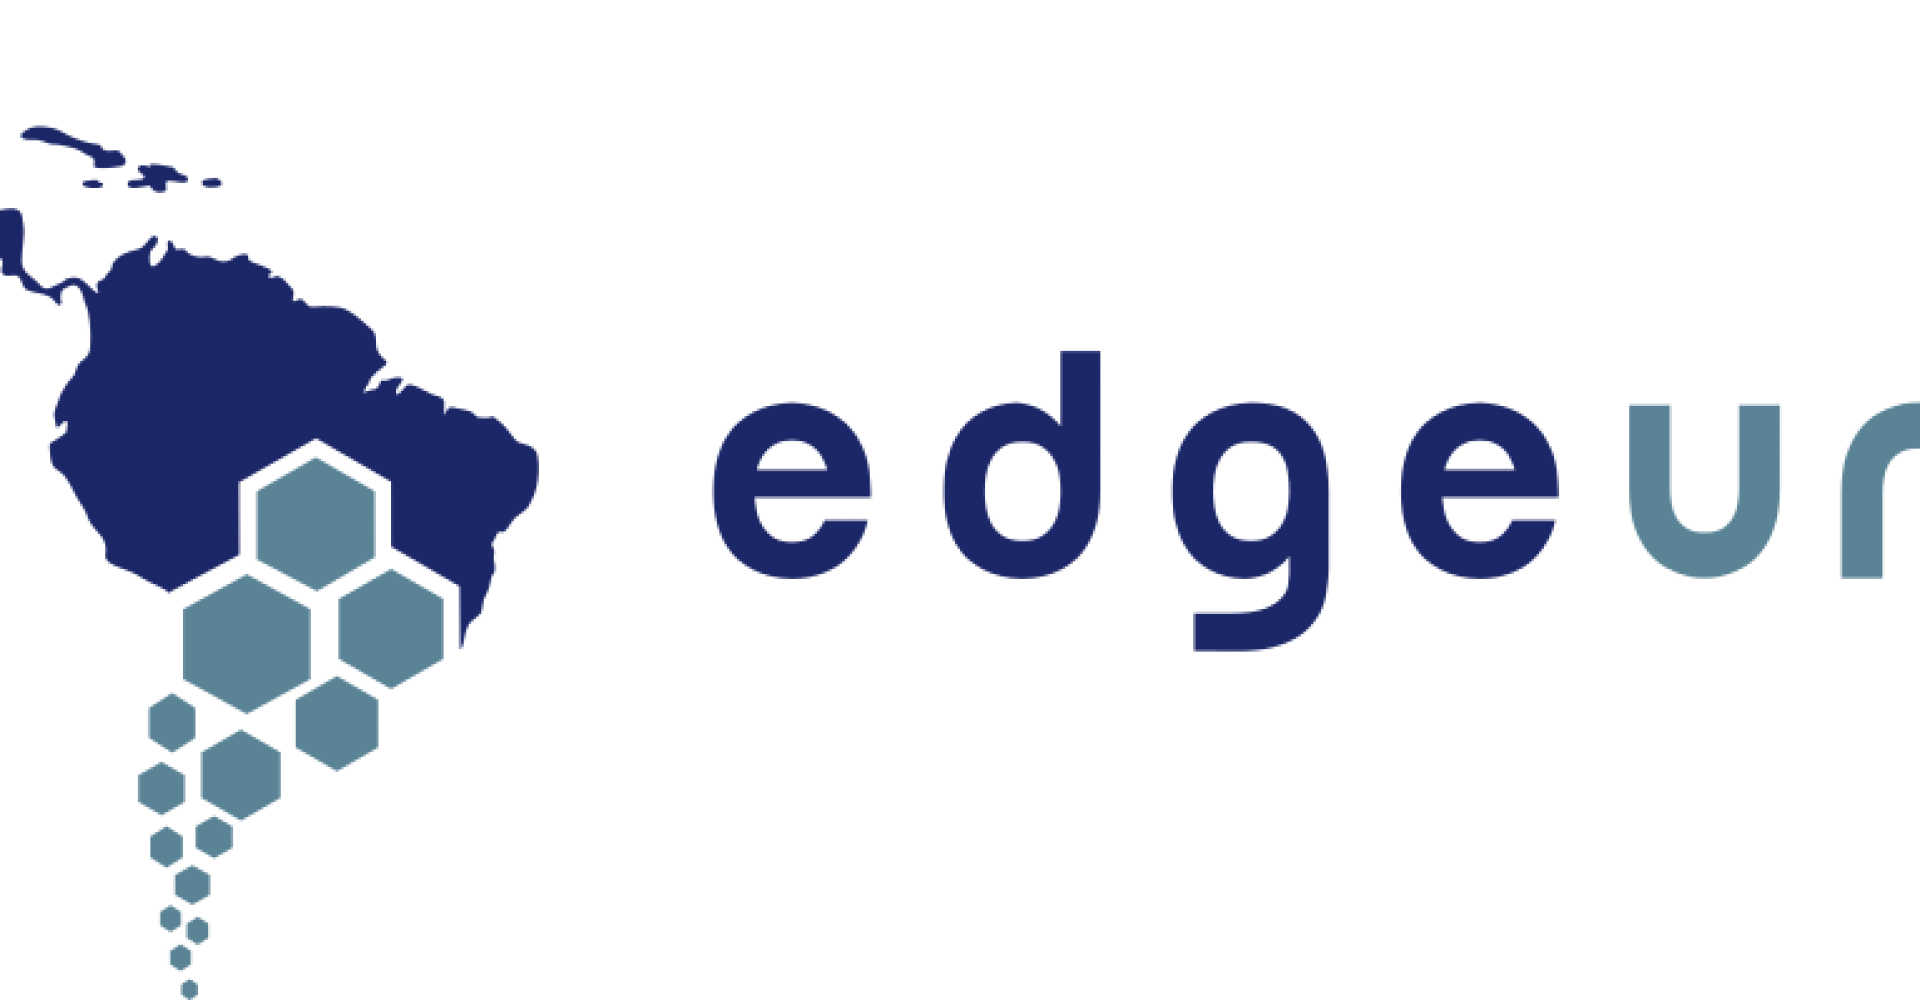 Edge Uno